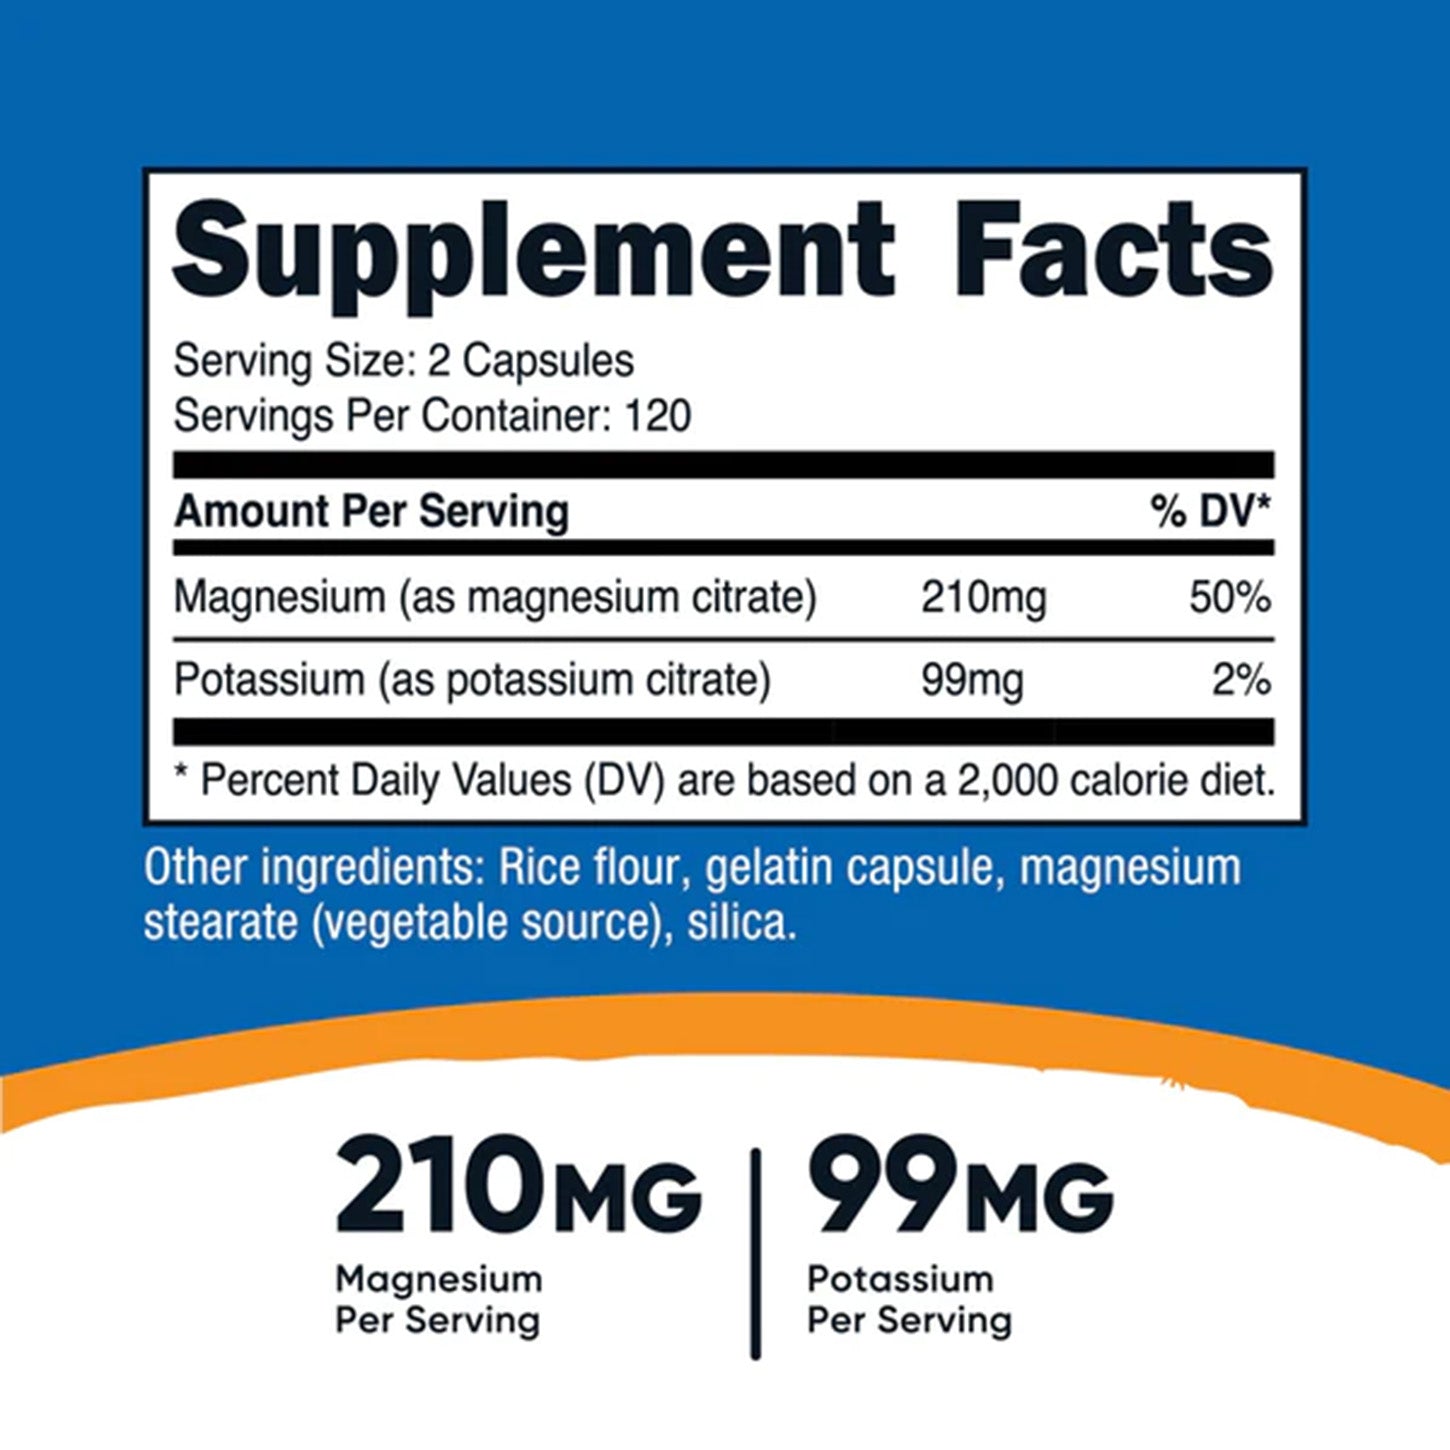 Nutricost Potassium + Magnesium: Equilibrio Electrolytico y Salud Muscular | ProHealth Shop [Panamá]